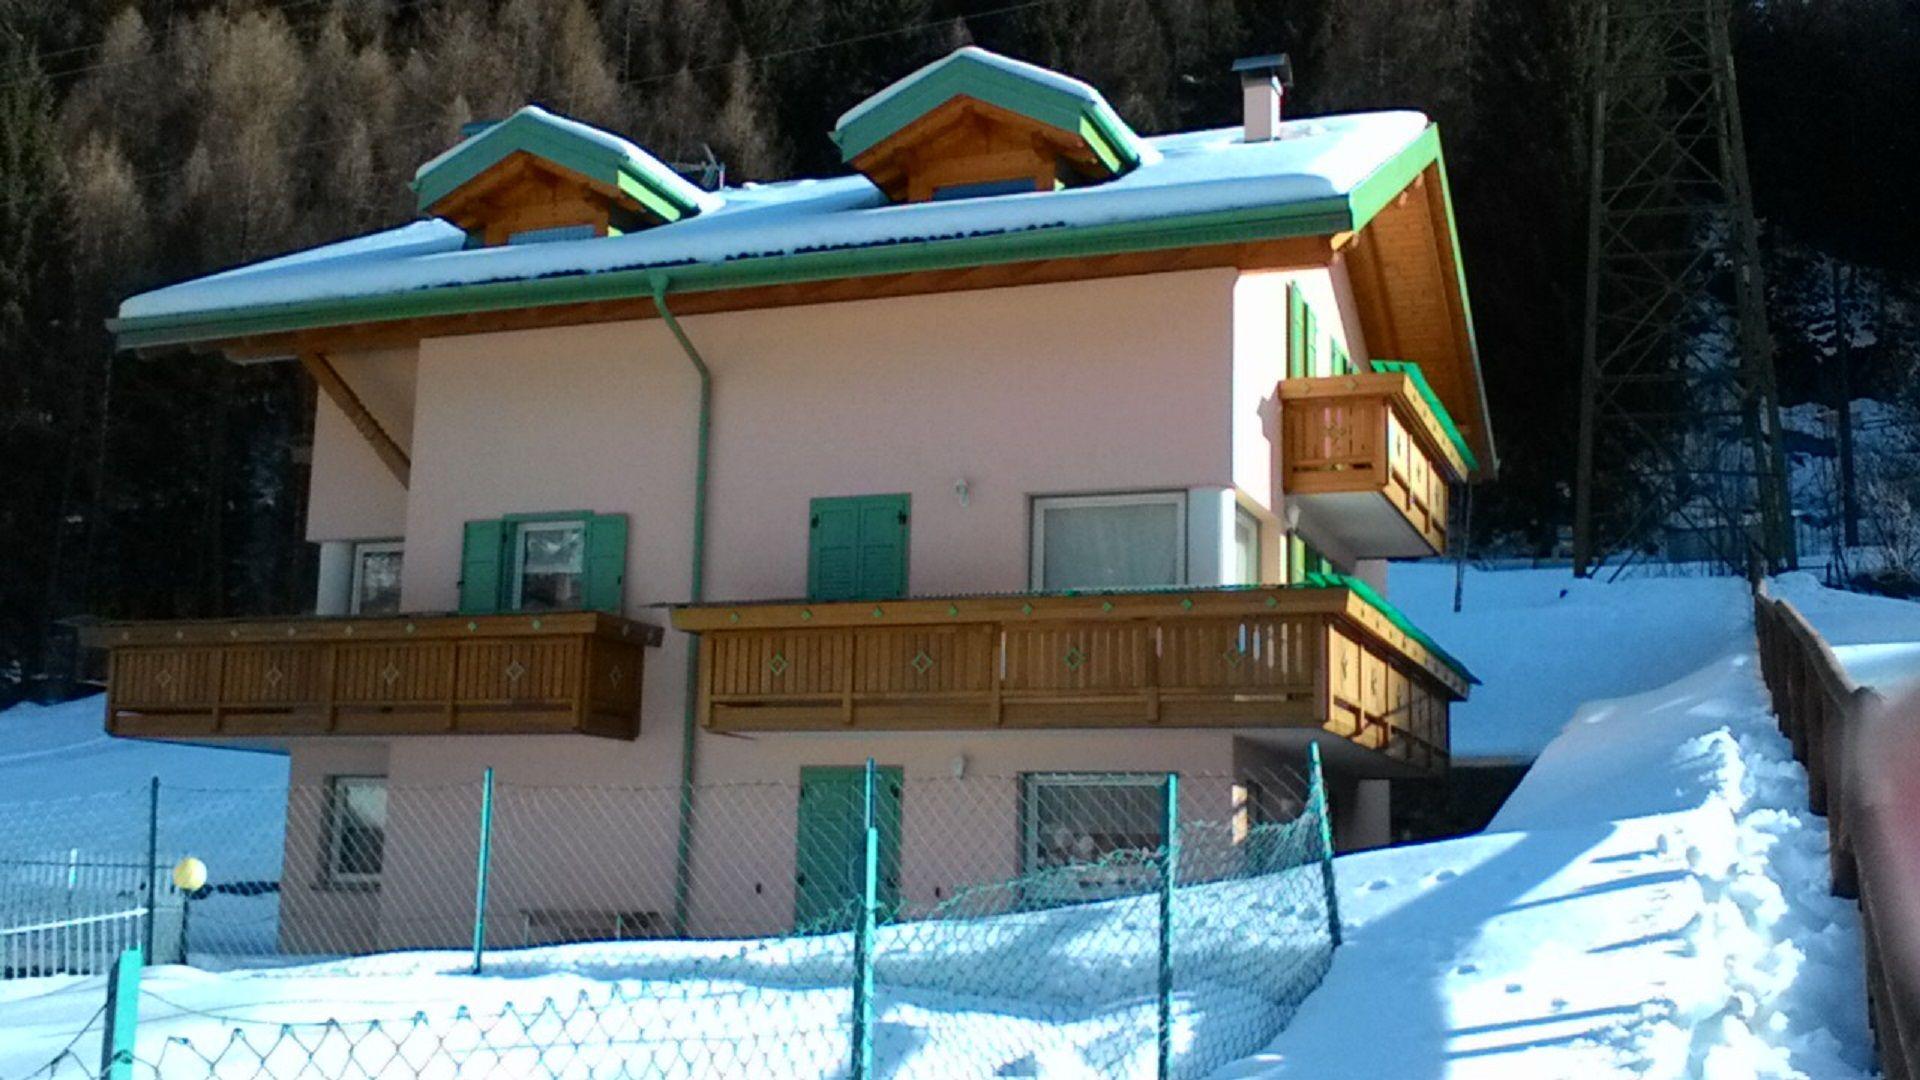 Ferienwohnung für 6 Personen ca. 75 m² i Ferienhaus in Italien